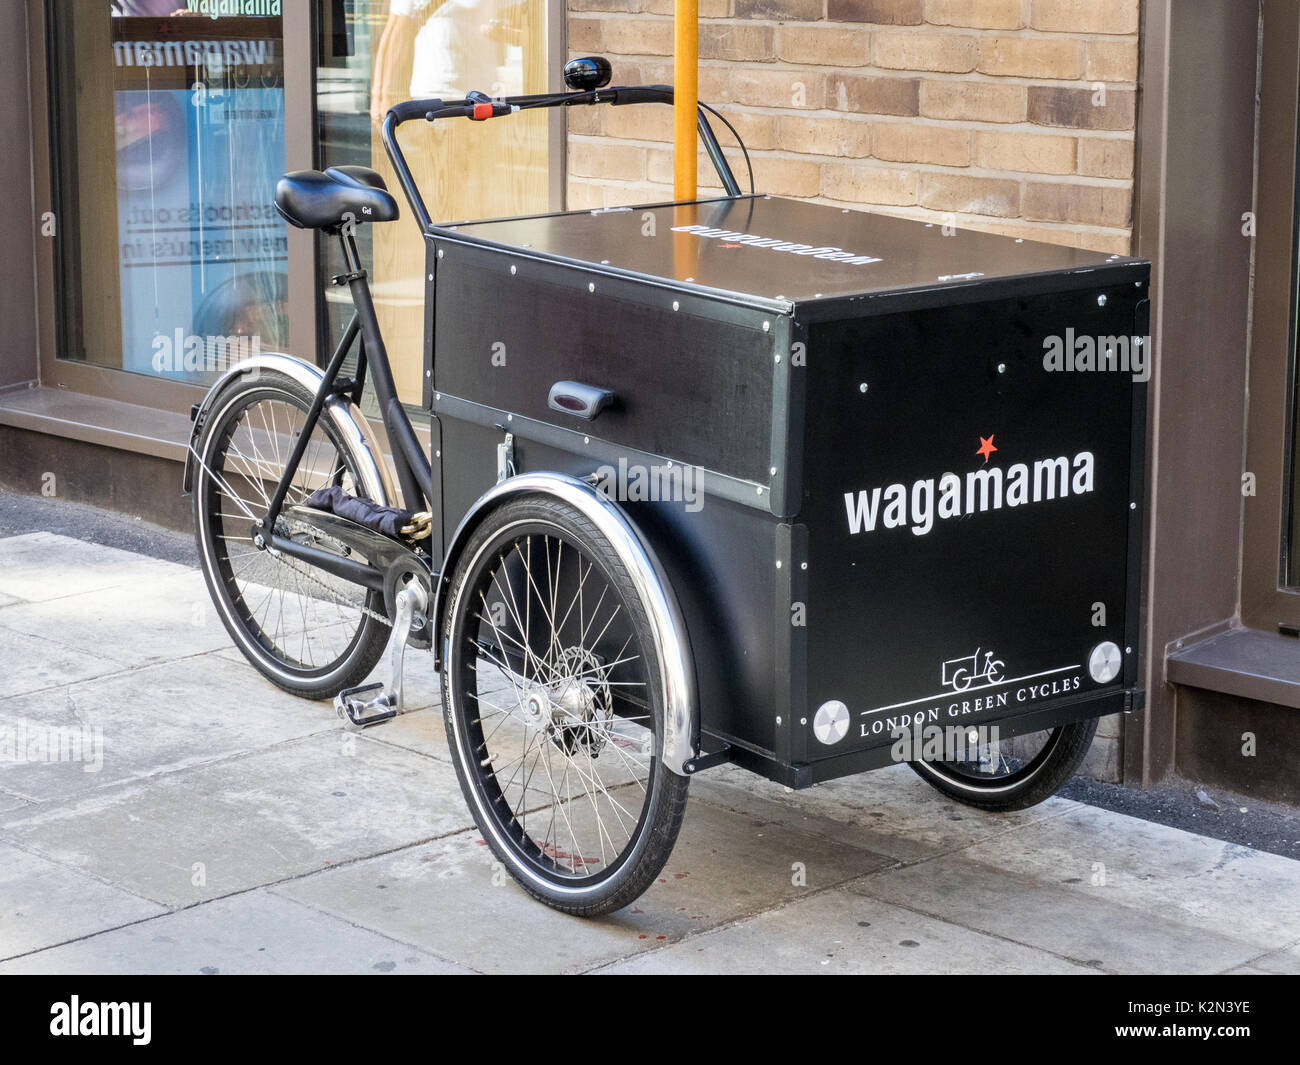 Vélo Cargo pour les livraisons de la cuisine fusion asiatique Wagamama restaurant à Soho, Central London UK Banque D'Images